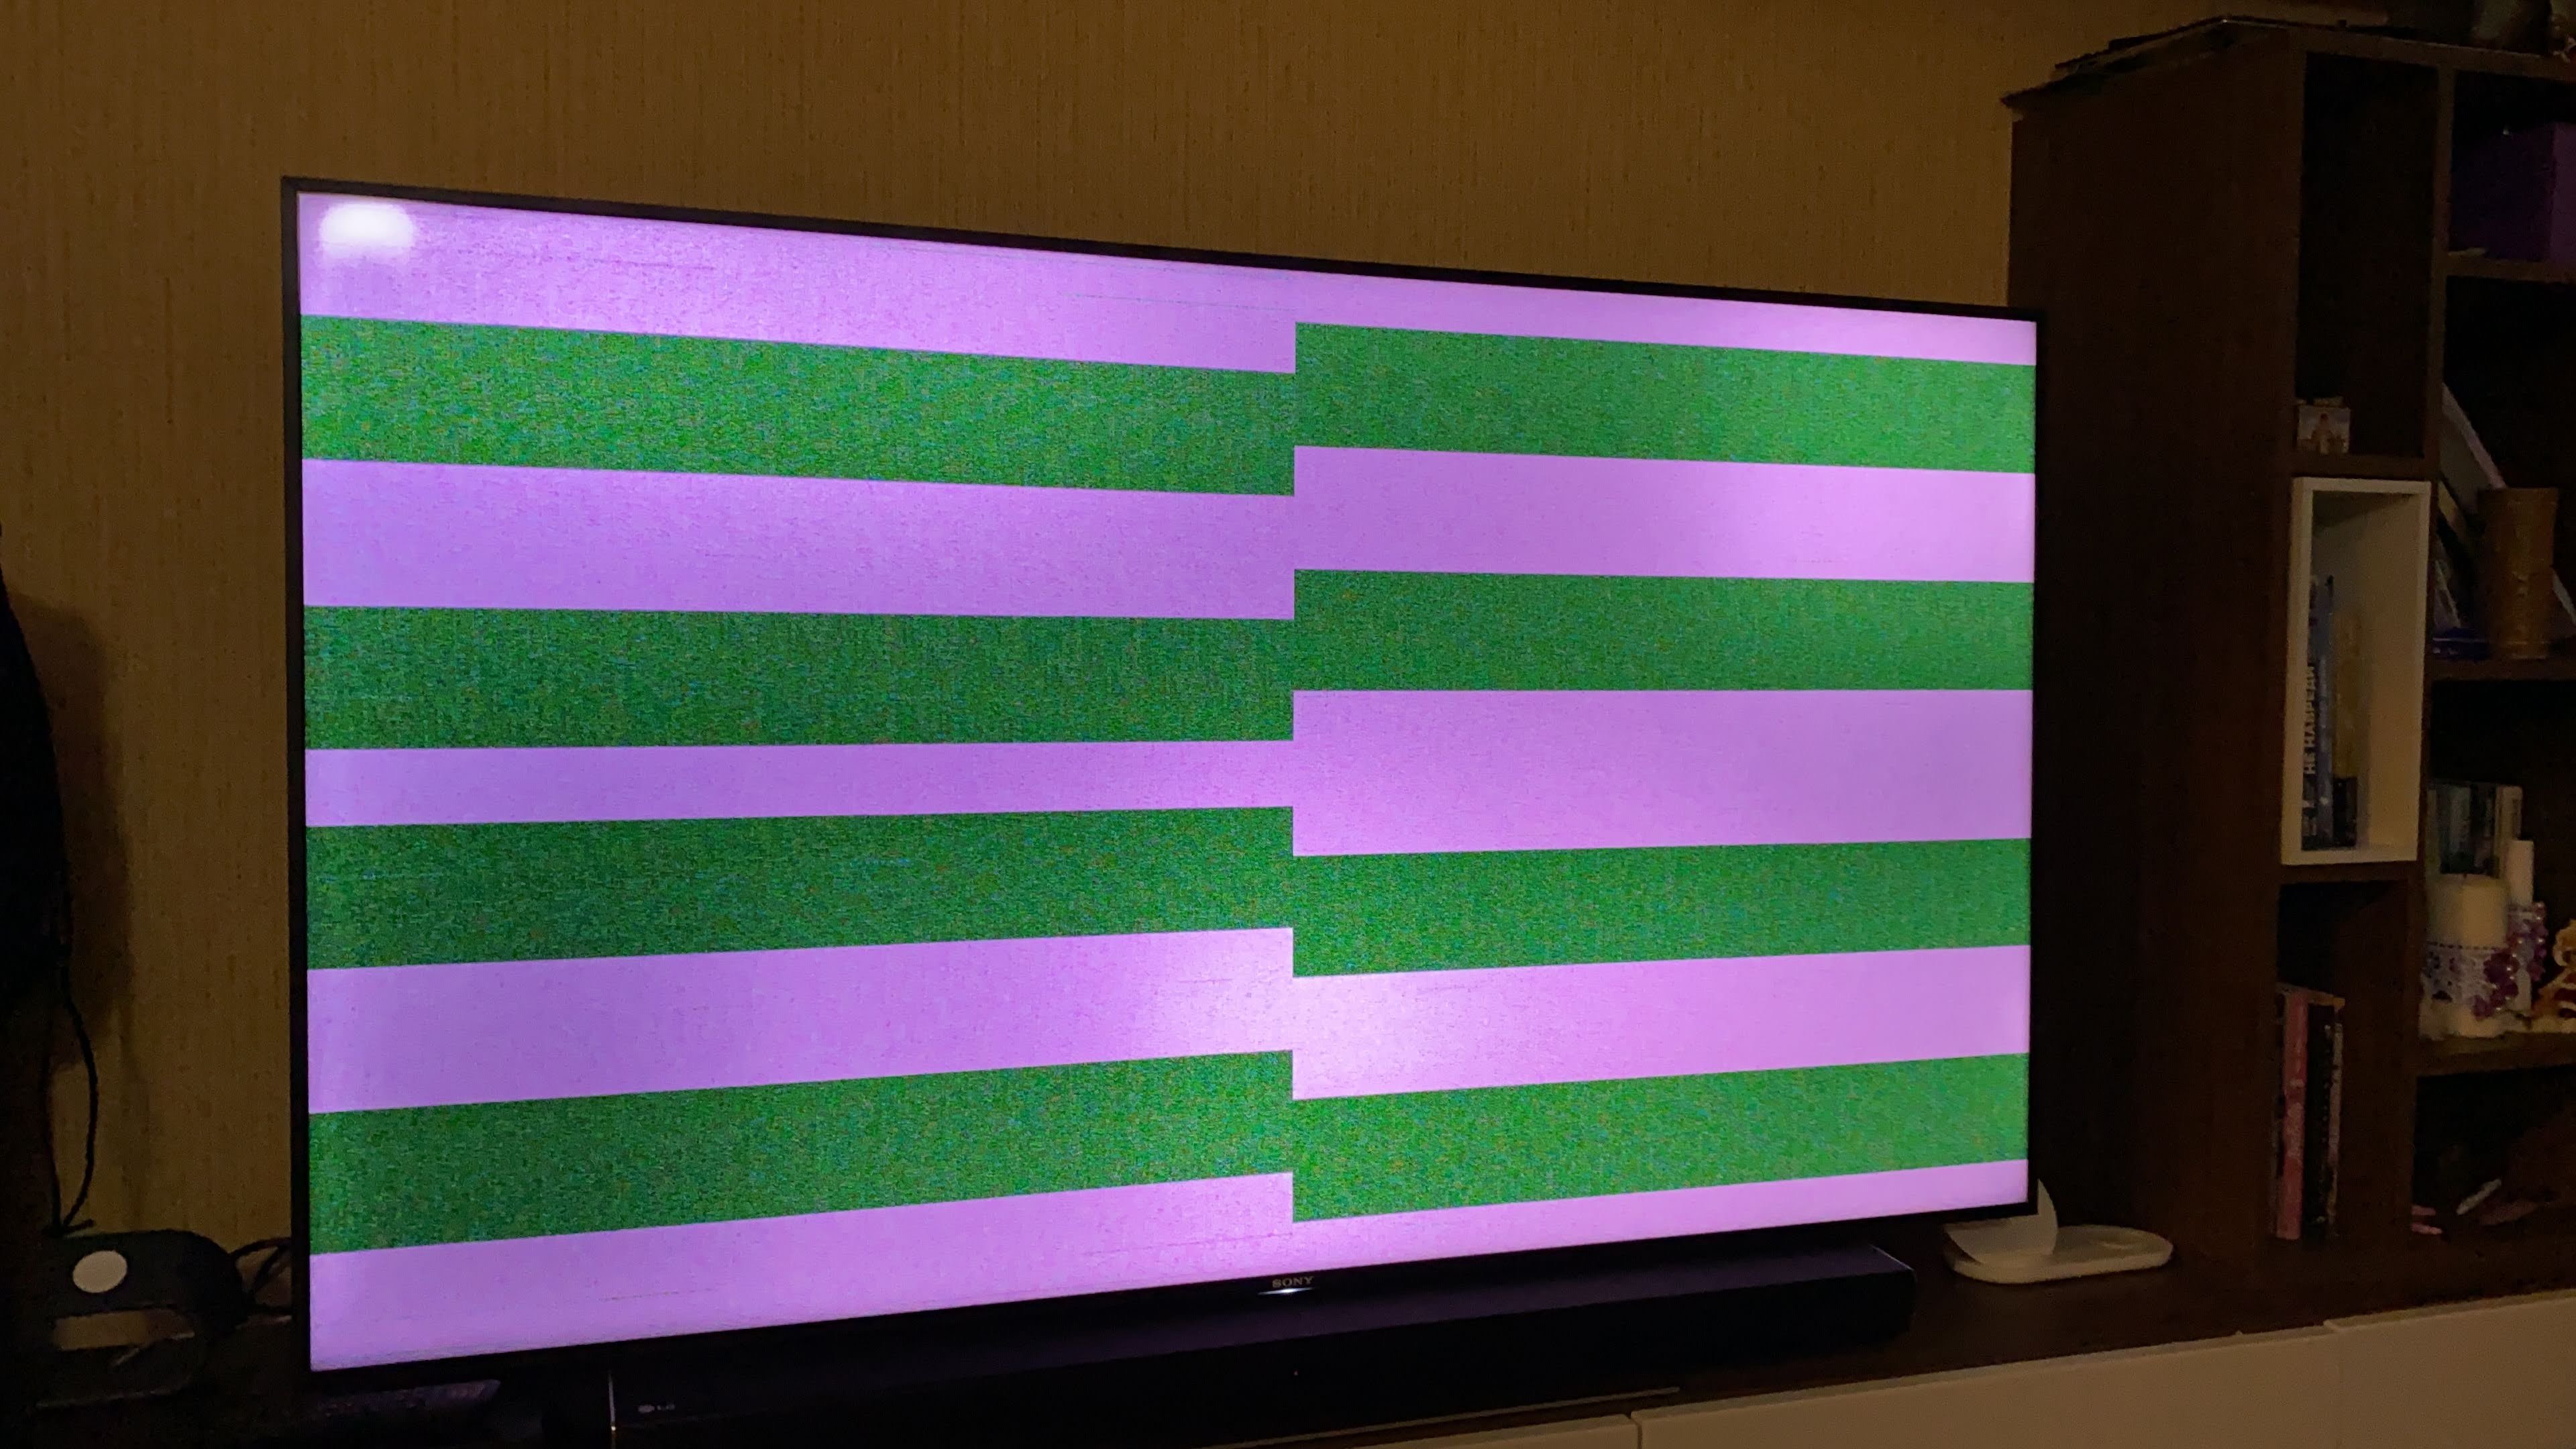 Тонкая полоса на телевизоре. KD-65x9005a полосы на экране. Горизонтальные полоски на экране. Горизонтальные полосы на телевизоре. Полоски на телевизоре.